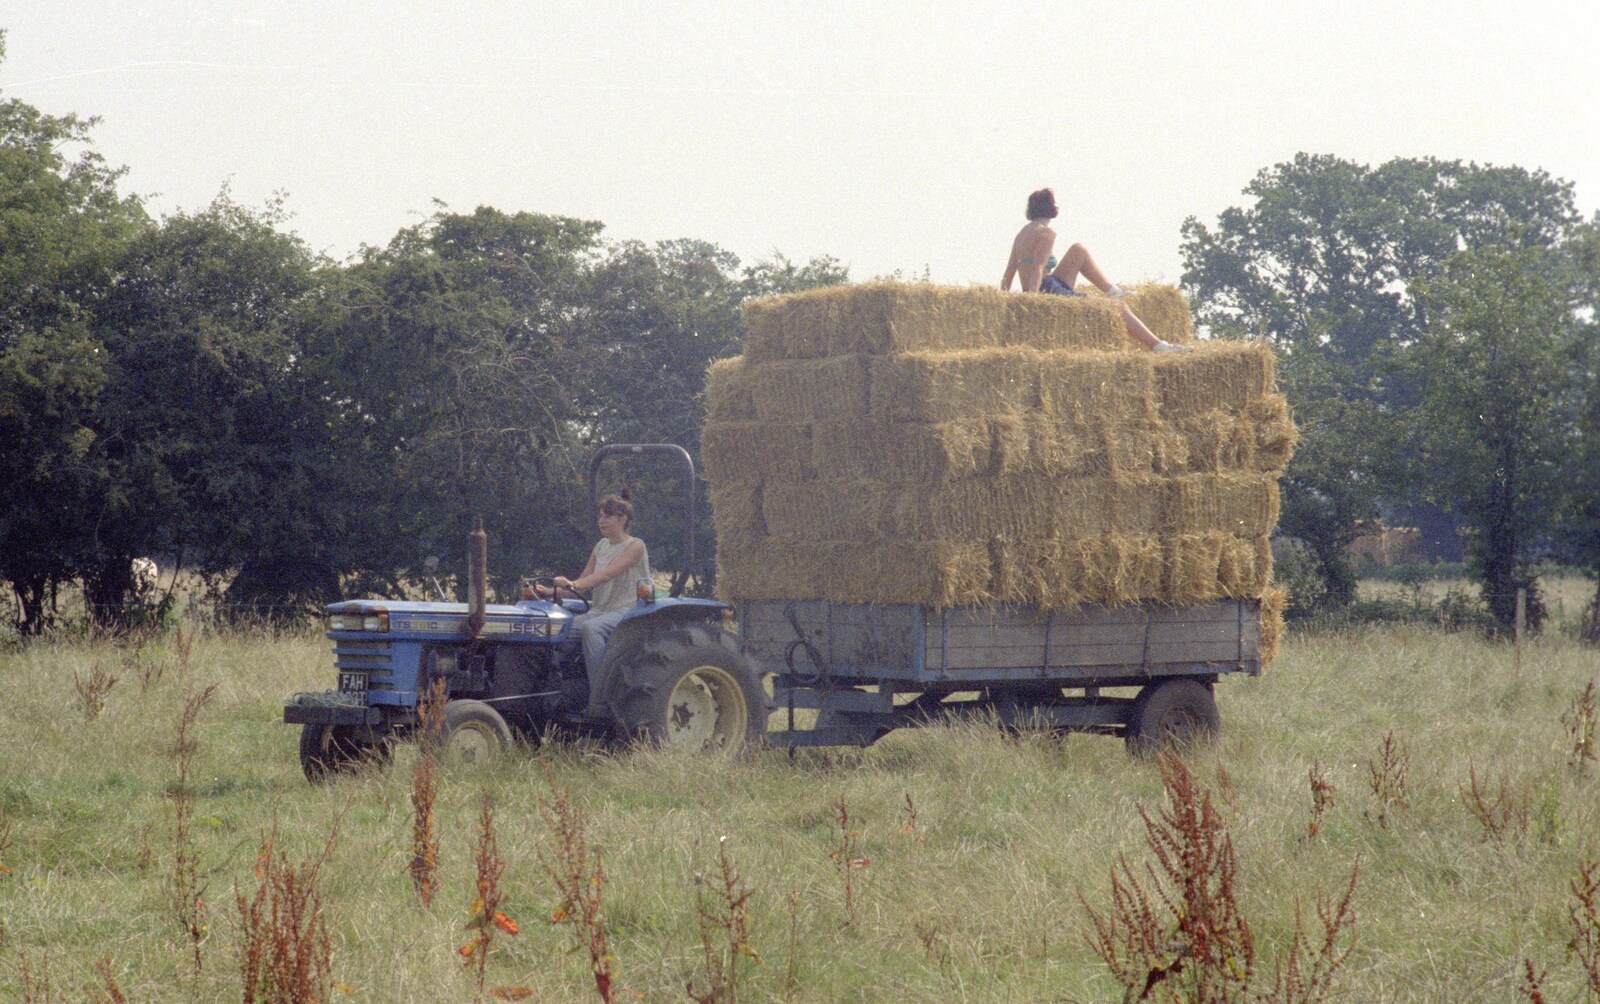 Working on the Harvest, Tibenham, Norfolk - 11th August 1992: Rachel drives around